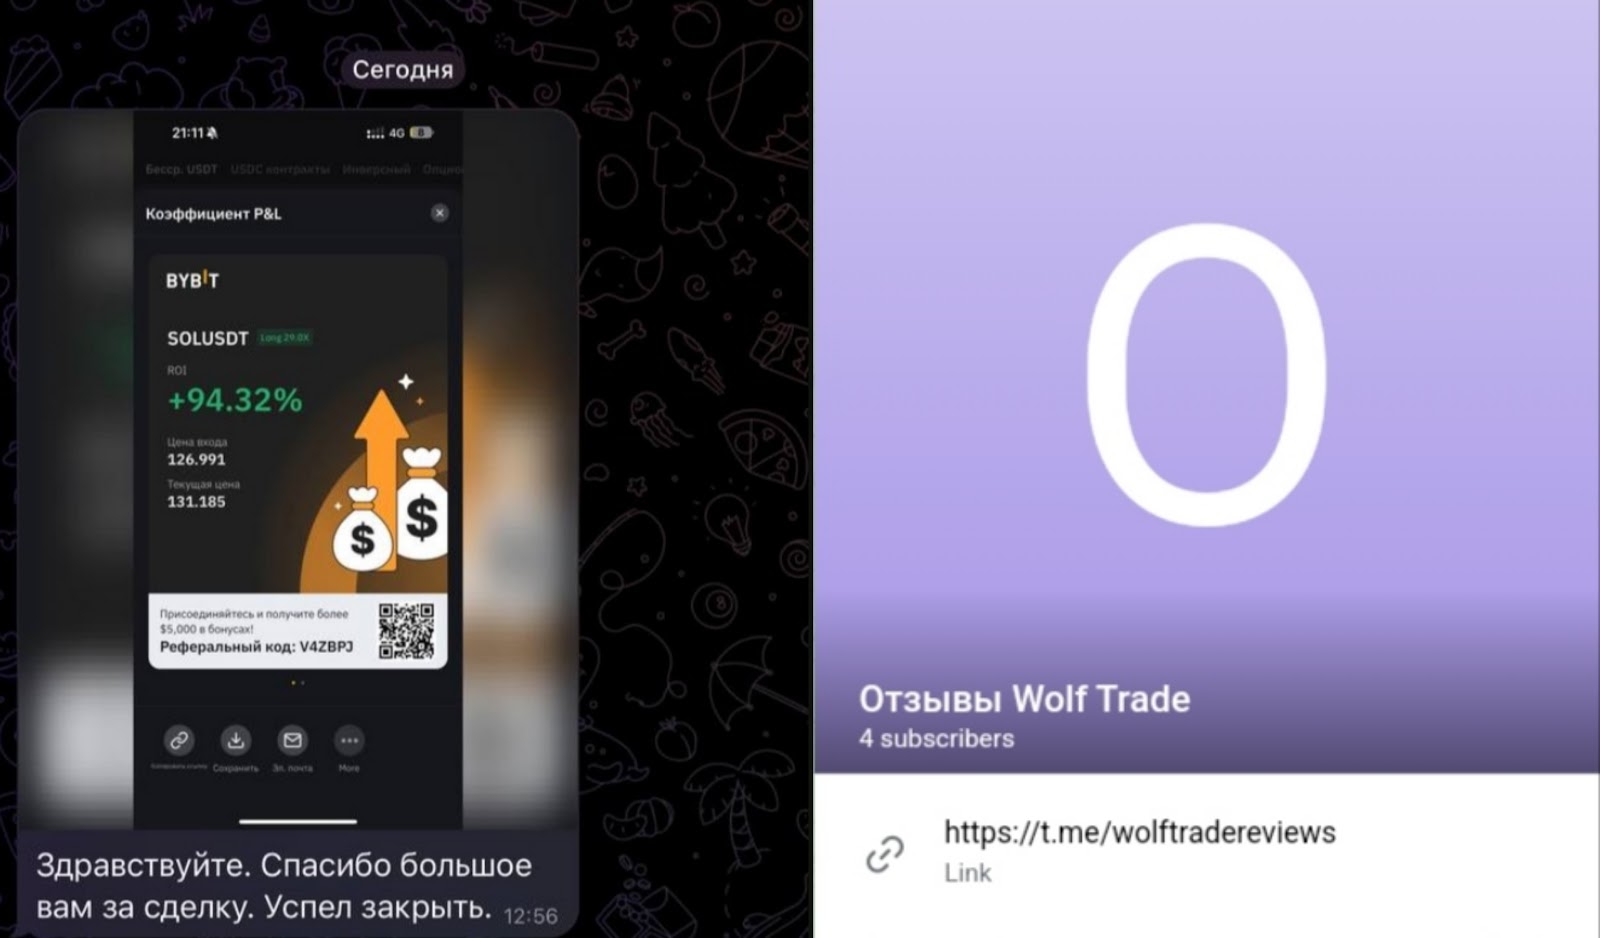 Wolf Trade